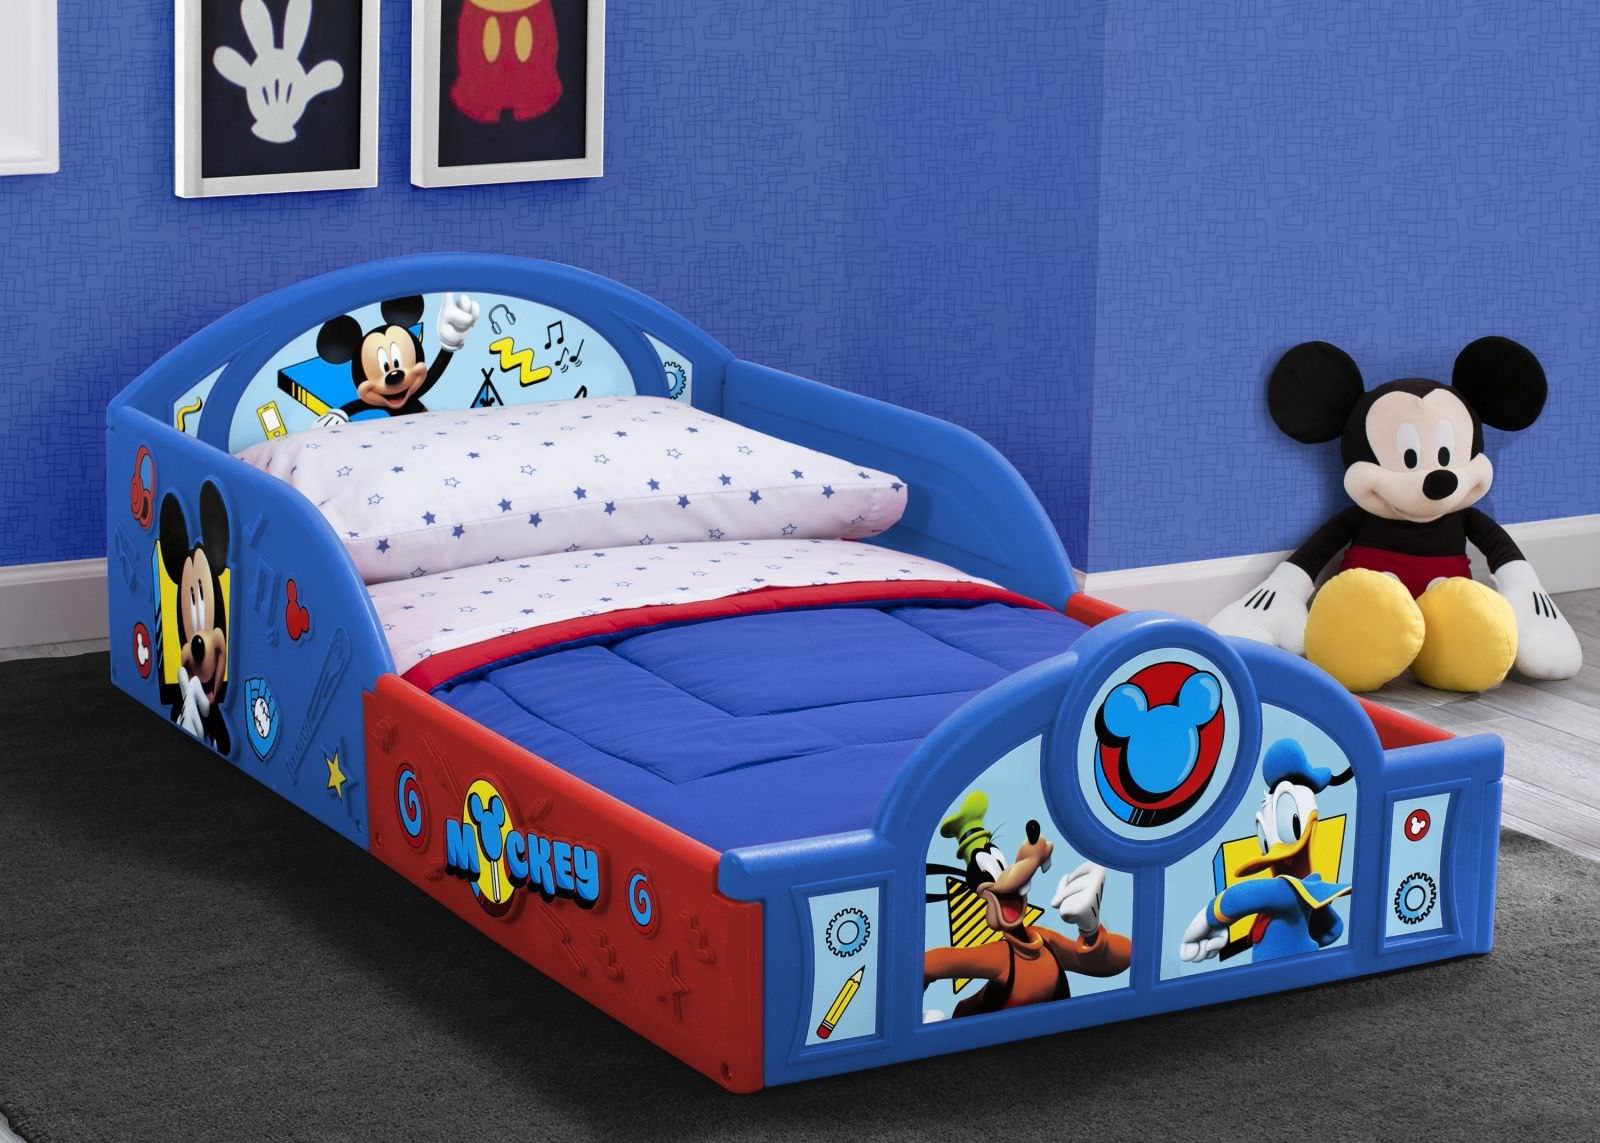 Thiết kế giường ngủ dạng hộp nhỏ chủ đề Chuột Mickey dễ thương